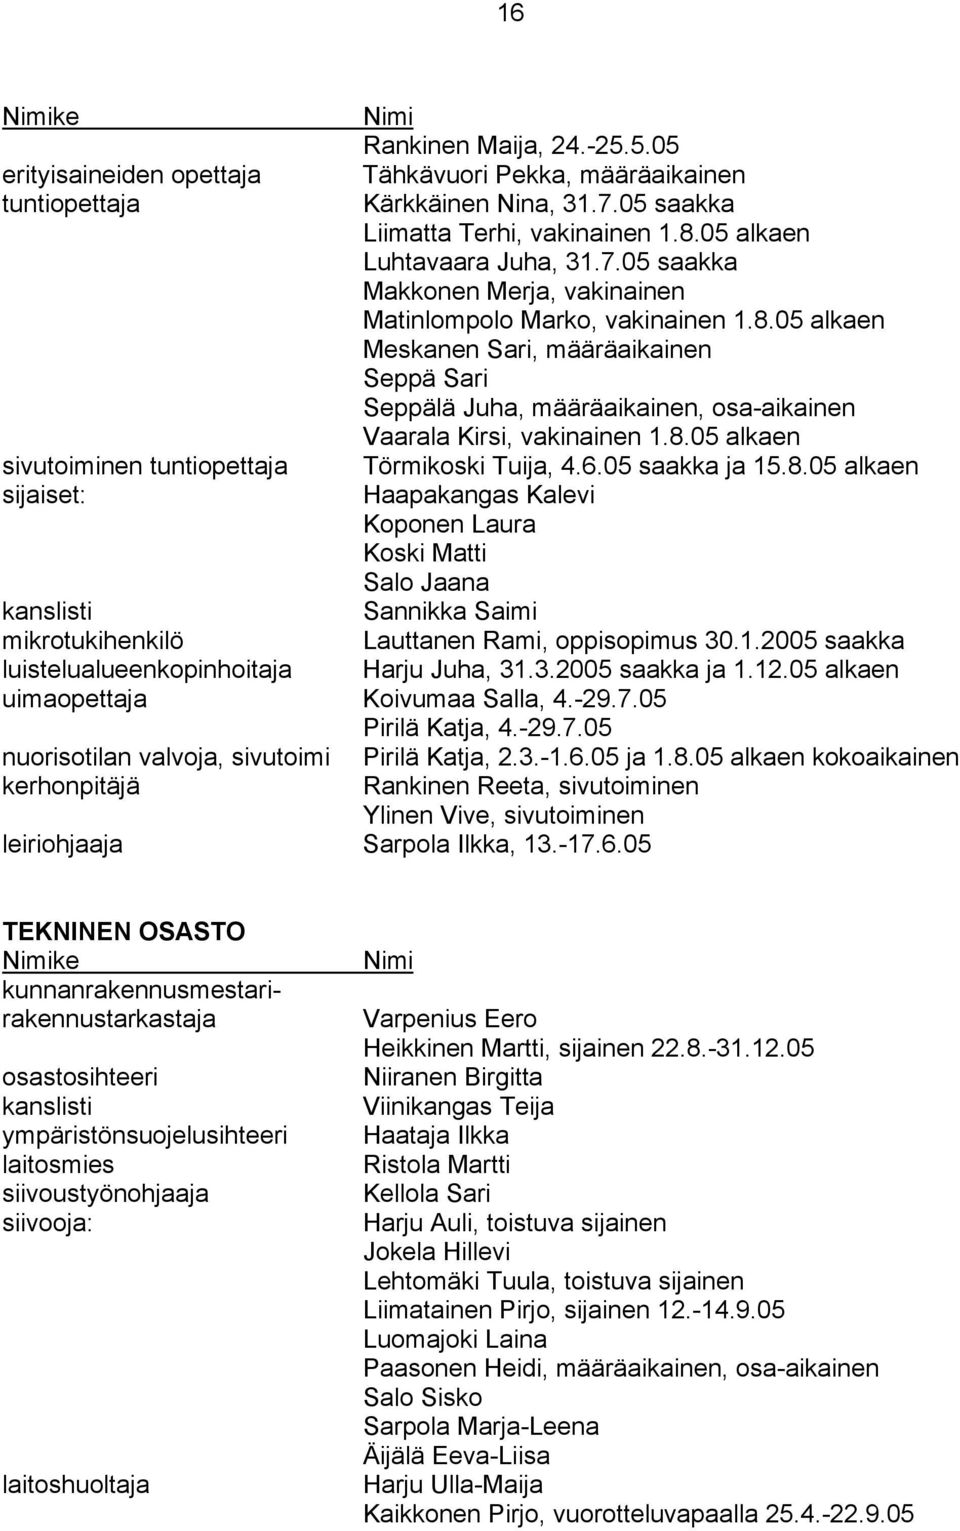 1.2005 saakka luistelualueenkopinhoitaja Harju Juha, 31.3.2005 saakka ja 1.12.05 uimaopettaja Koivumaa Salla, 4.-29.7.05 Pirilä Katja, 4.-29.7.05 nuorisotilan valvoja, sivutoimi Pirilä Katja, 2.3.-1.